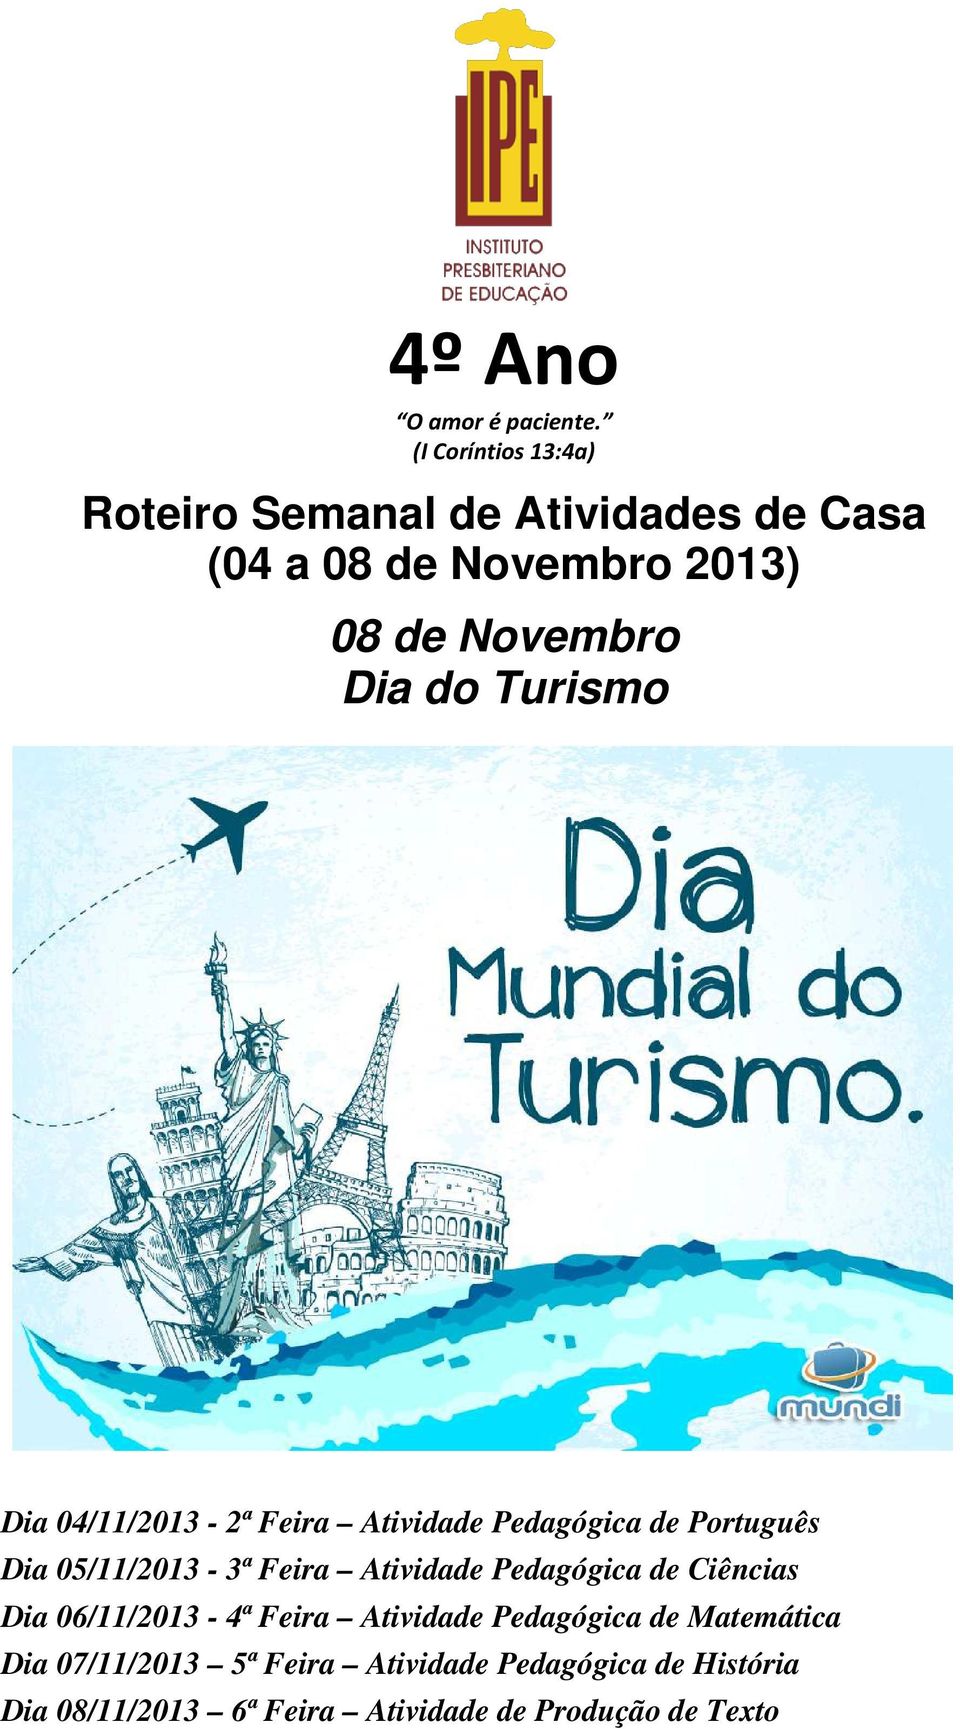 Turismo Dia 04/11/2013-2ª Feira Atividade Pedagógica de Português Dia 05/11/2013-3ª Feira Atividade